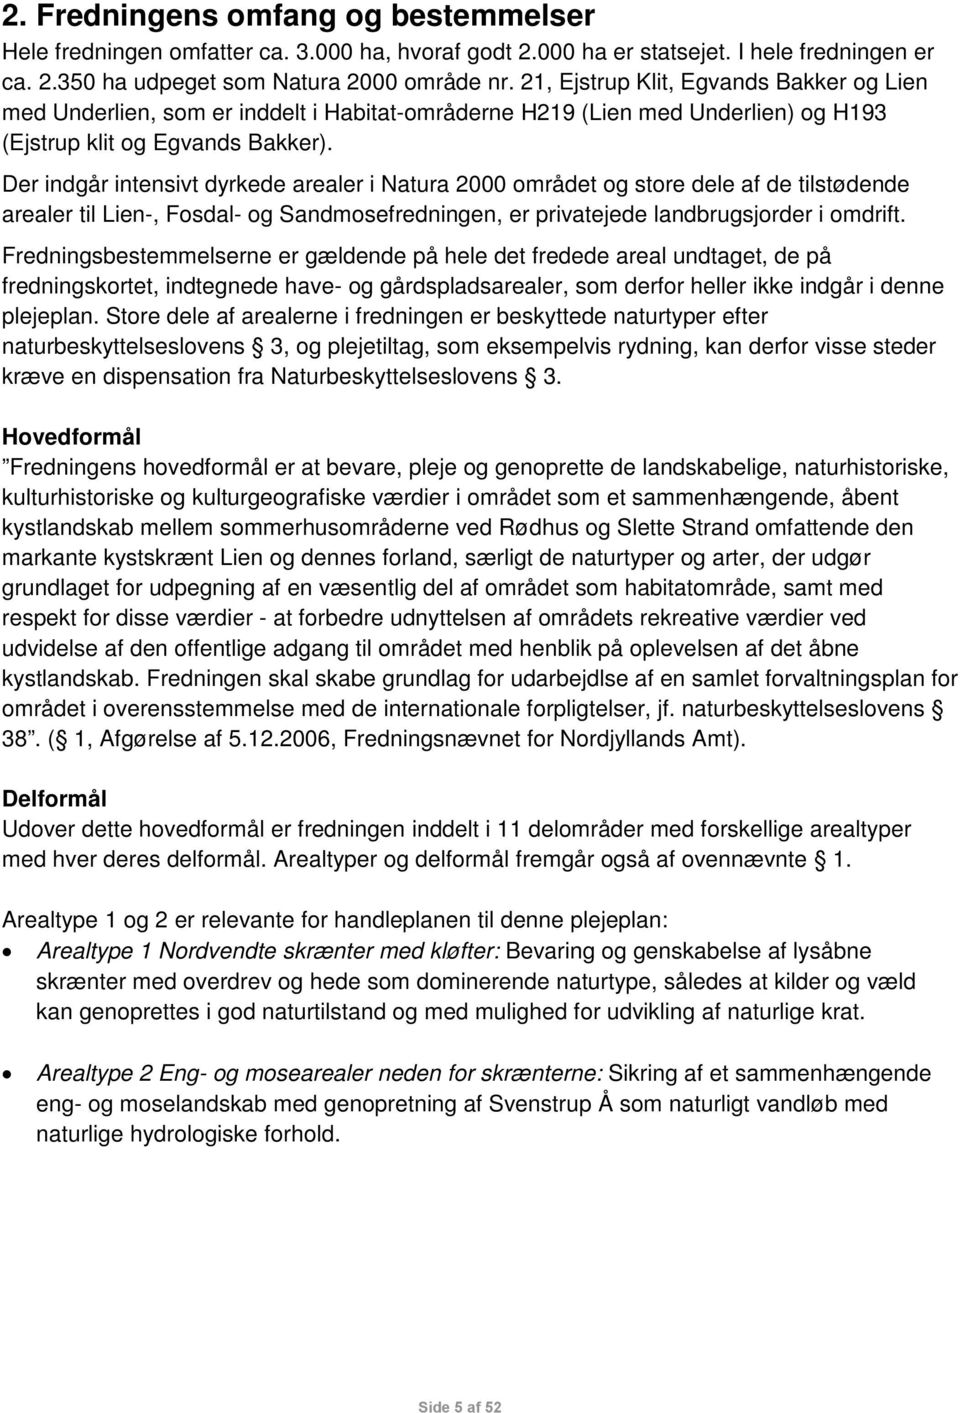 Plejeplan. Lien, Fosdalen og Sandmosen. Overordnet plejeplan og handleplan  - PDF Free Download